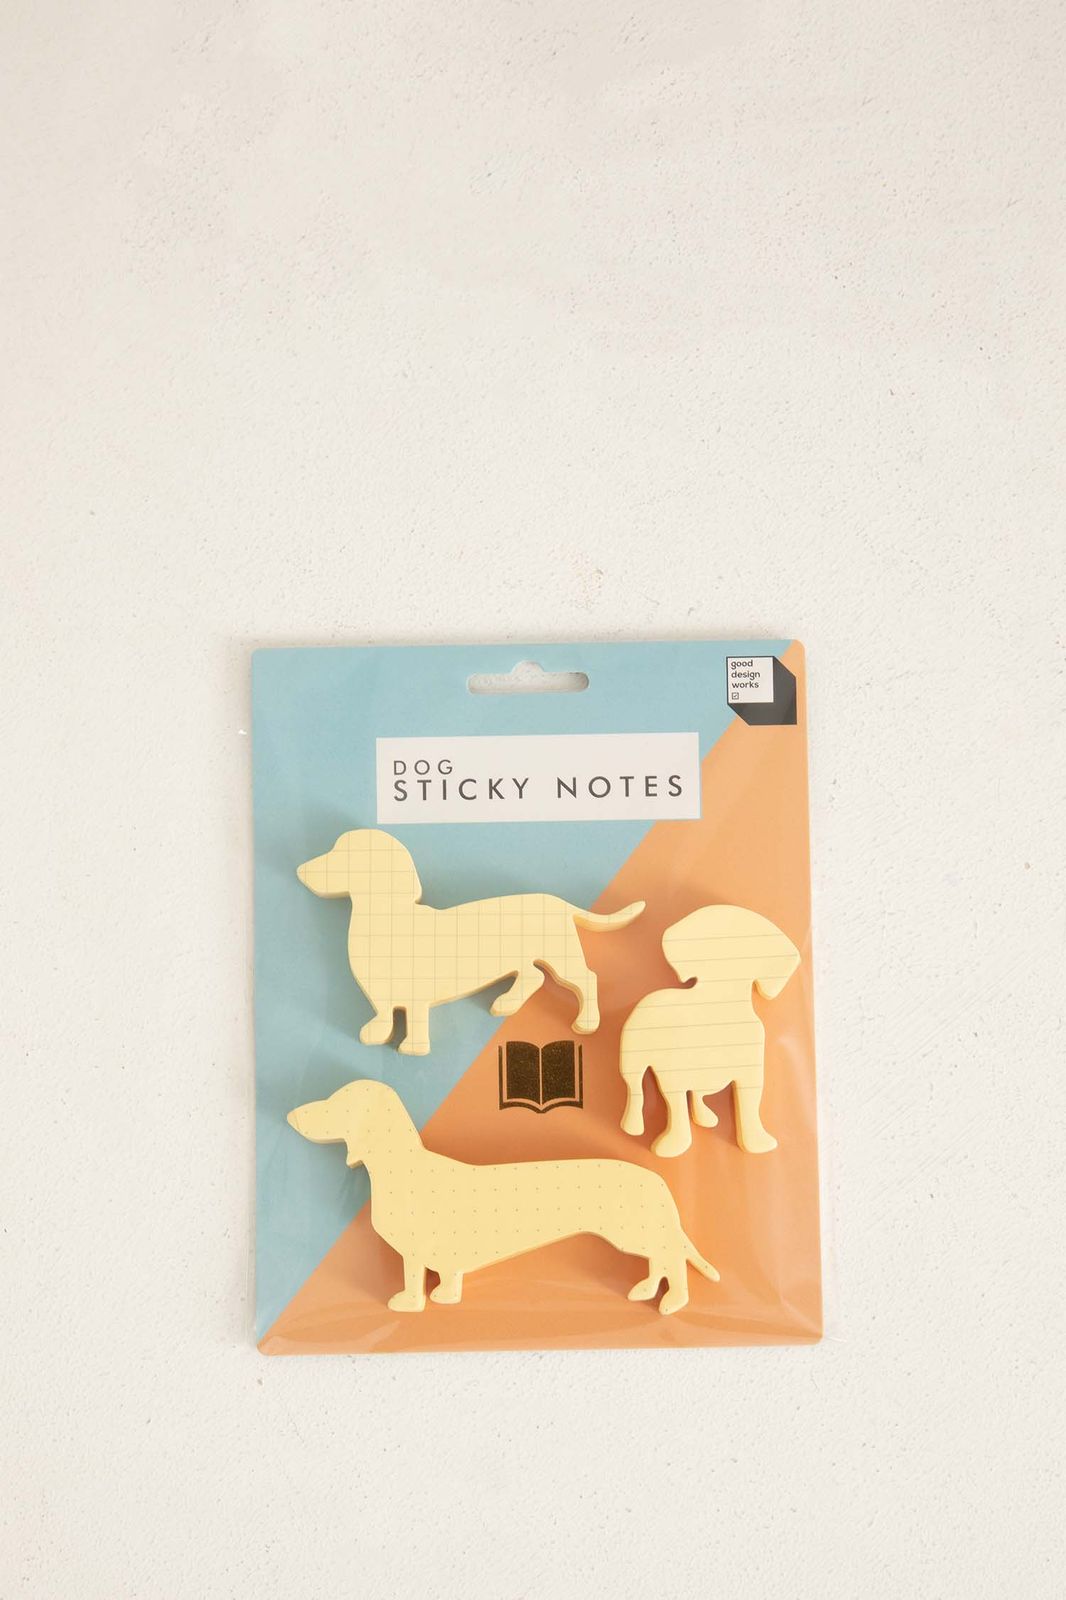 Dog sticky notes